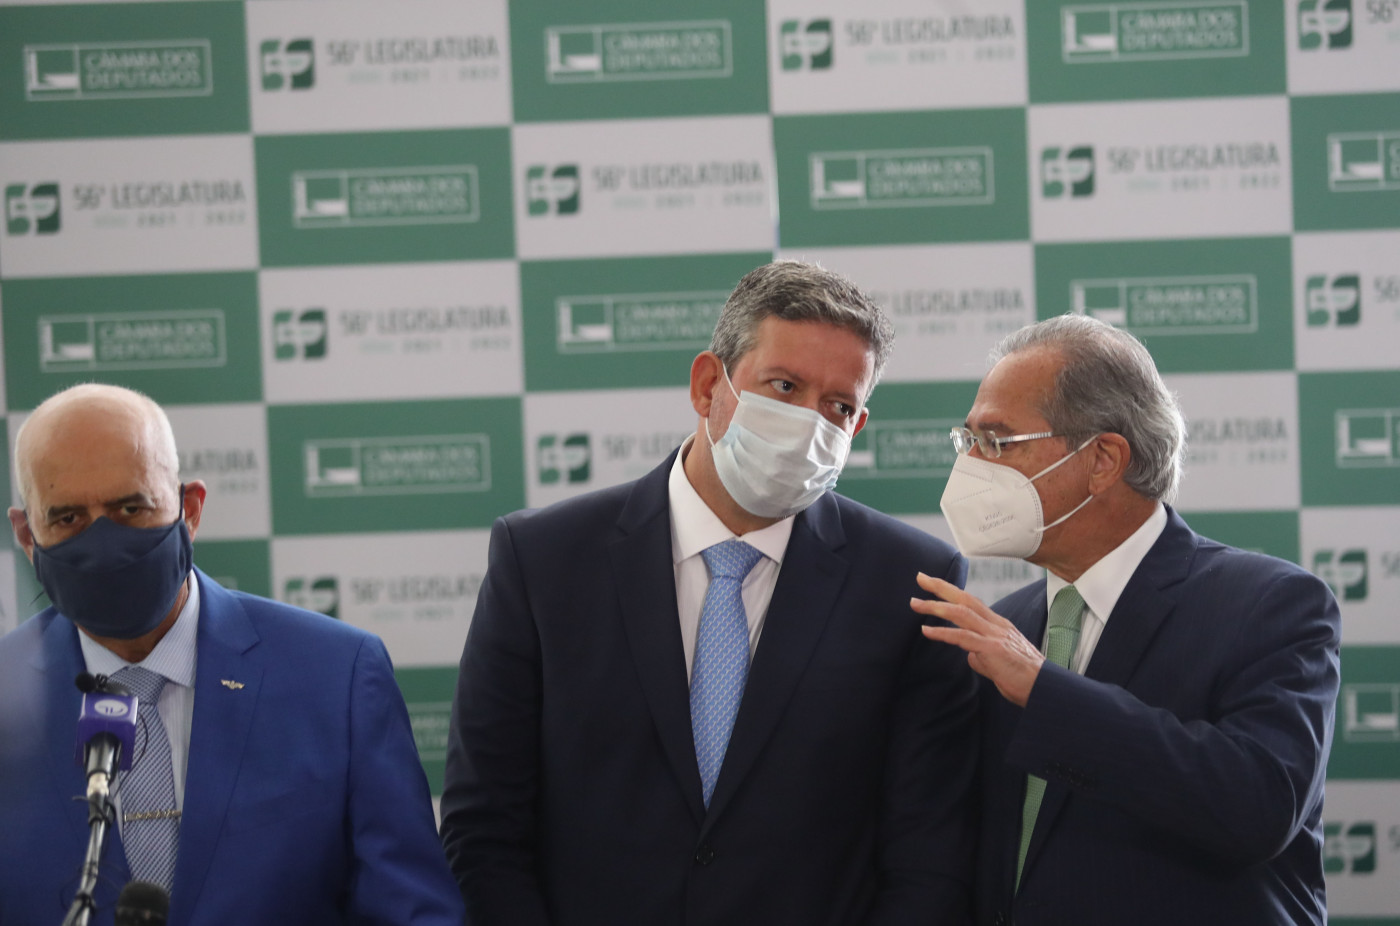 Segunda etapa da reforma tributária foi entregue pelo ministro da Economia, Paulo Guedes, ao presidente da Câmara, Arthur Lira, no fim de junho